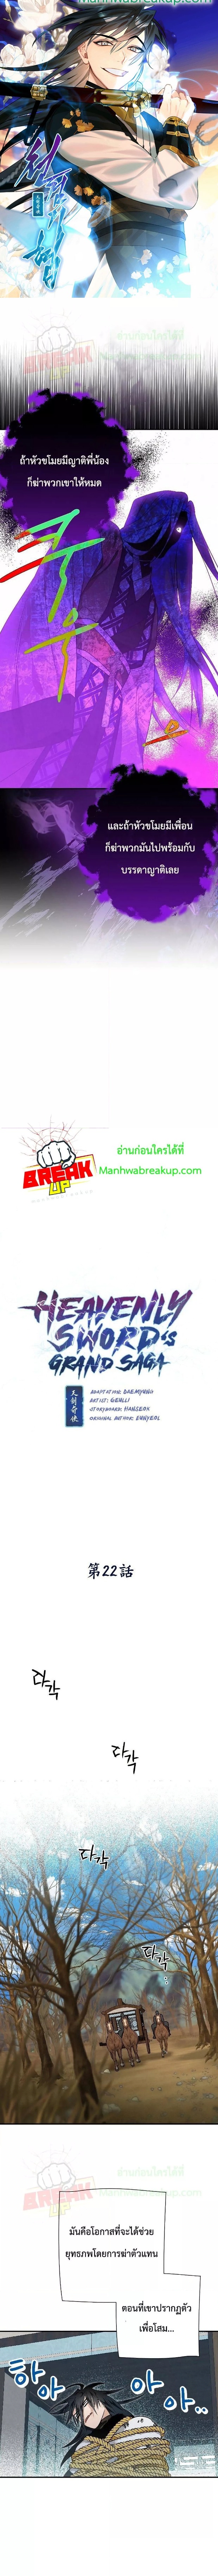 Heavenly Swordâ€™s Grand Saga 22 (1)